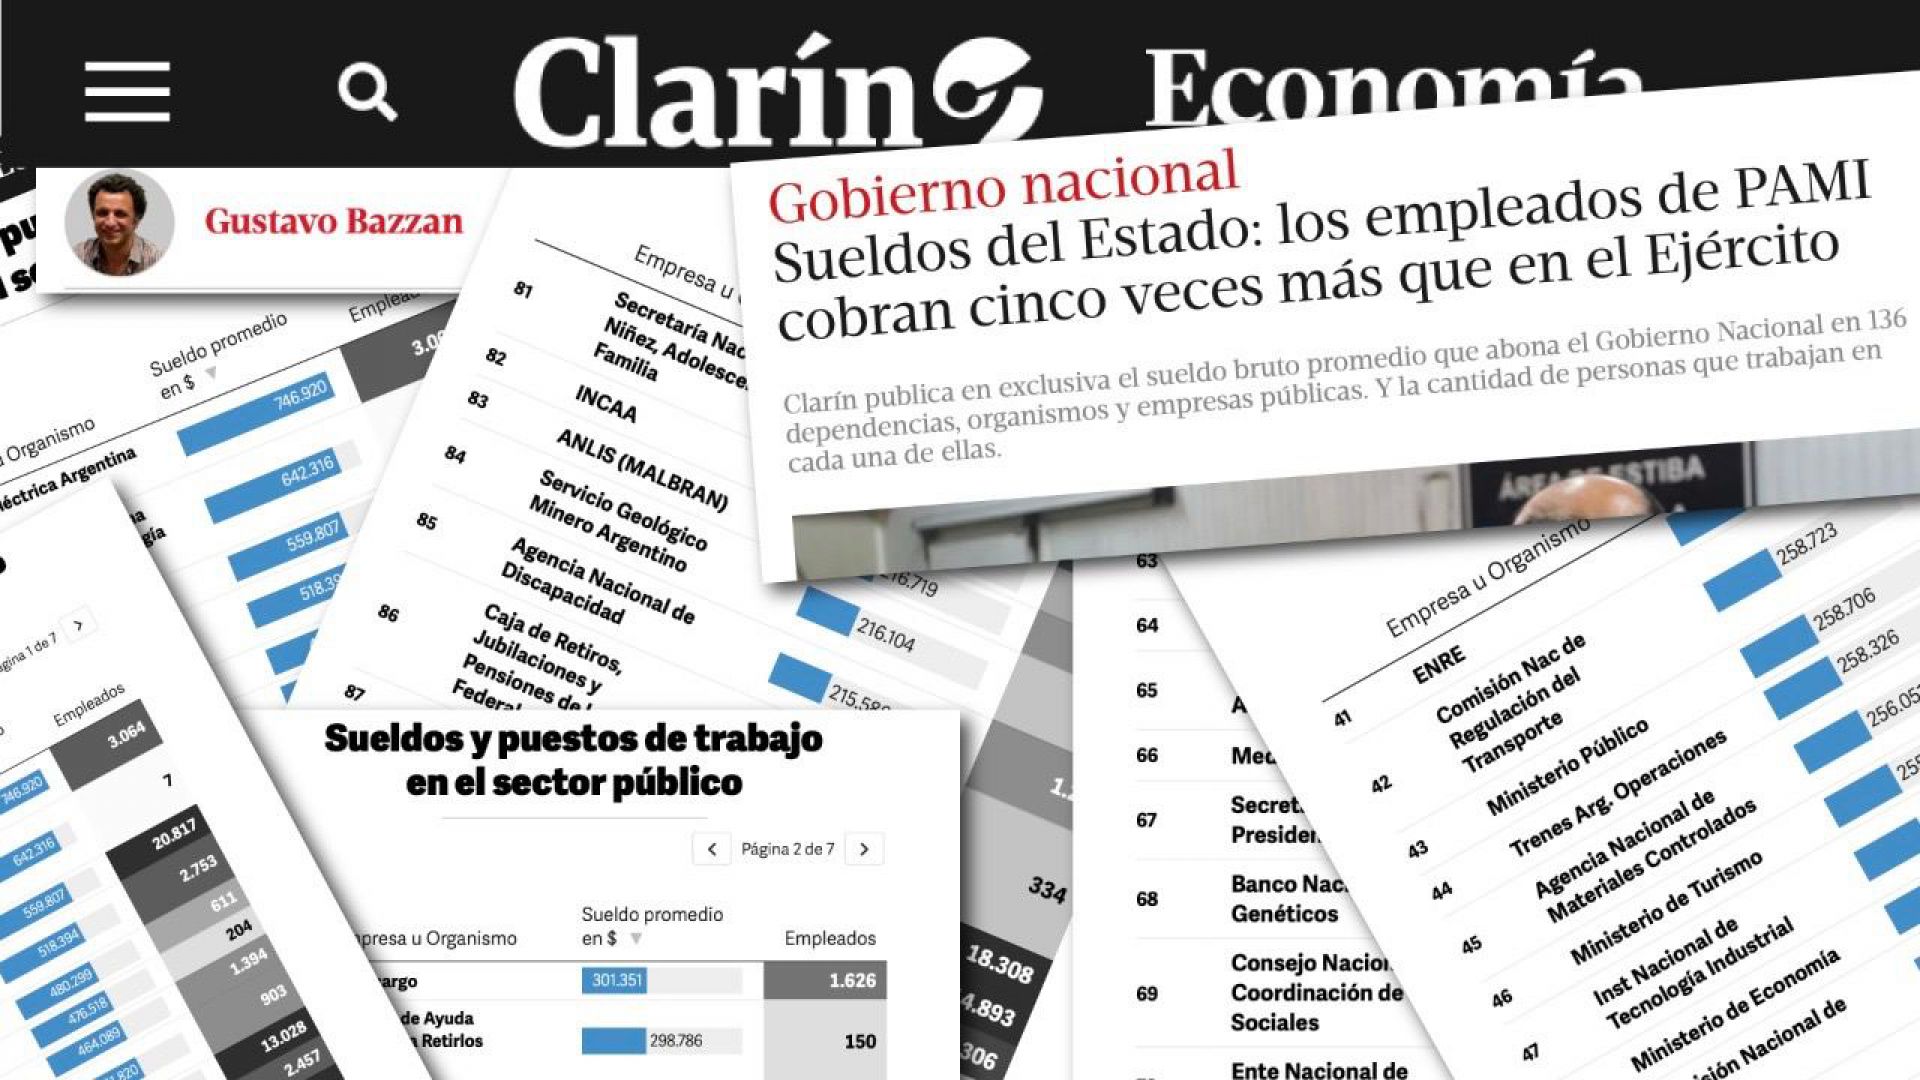 ¿Por qué es mal intencionada la nota de Clarín?